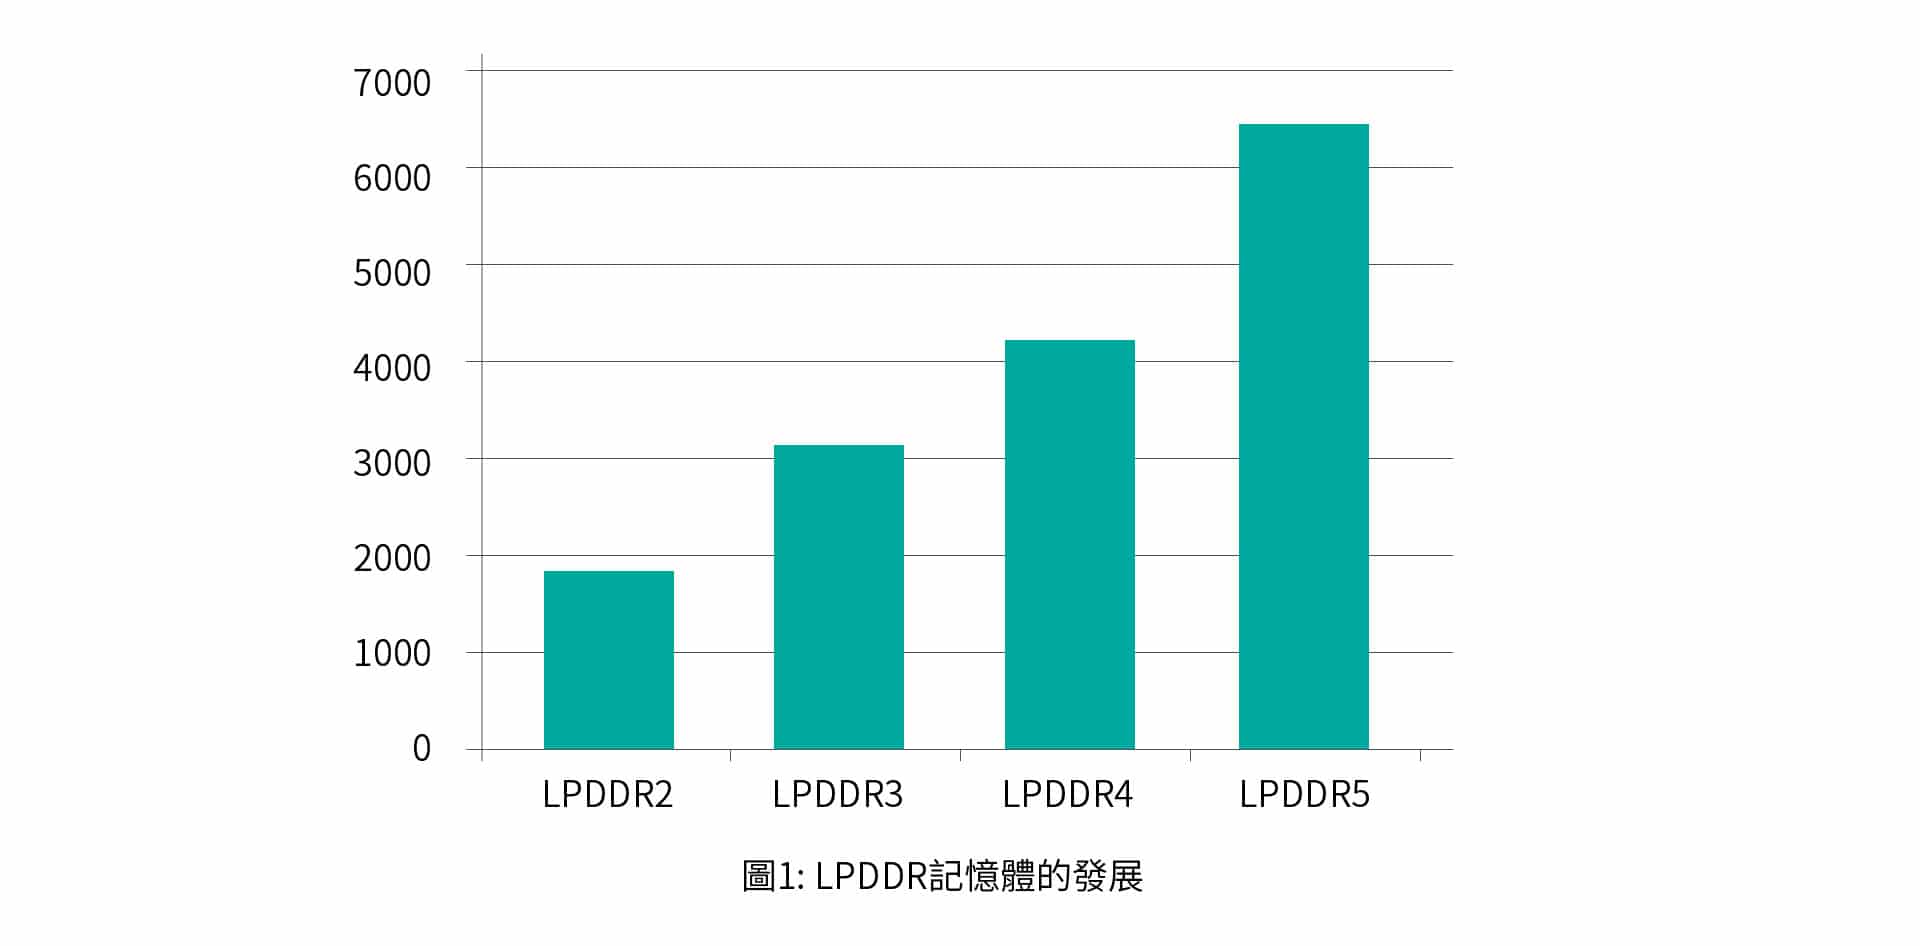 LPDDR5的傳輸速率不僅大幅提升，同時支援更低的工作電壓，因此也更省電。